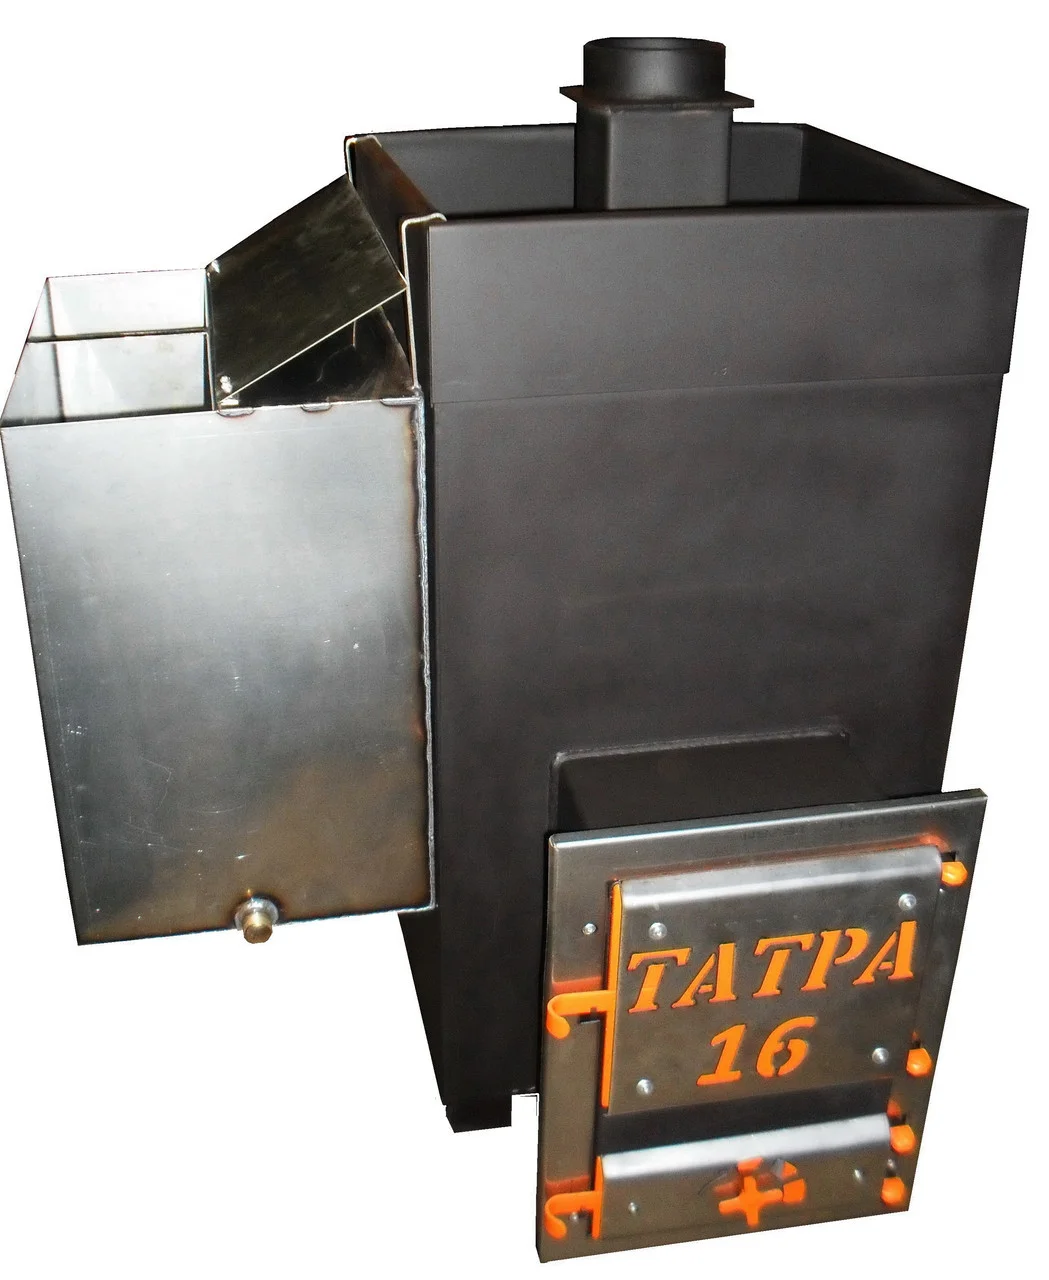 Фото товара Печь для бани Татра 16 в комплекте с баком. Изображение №2